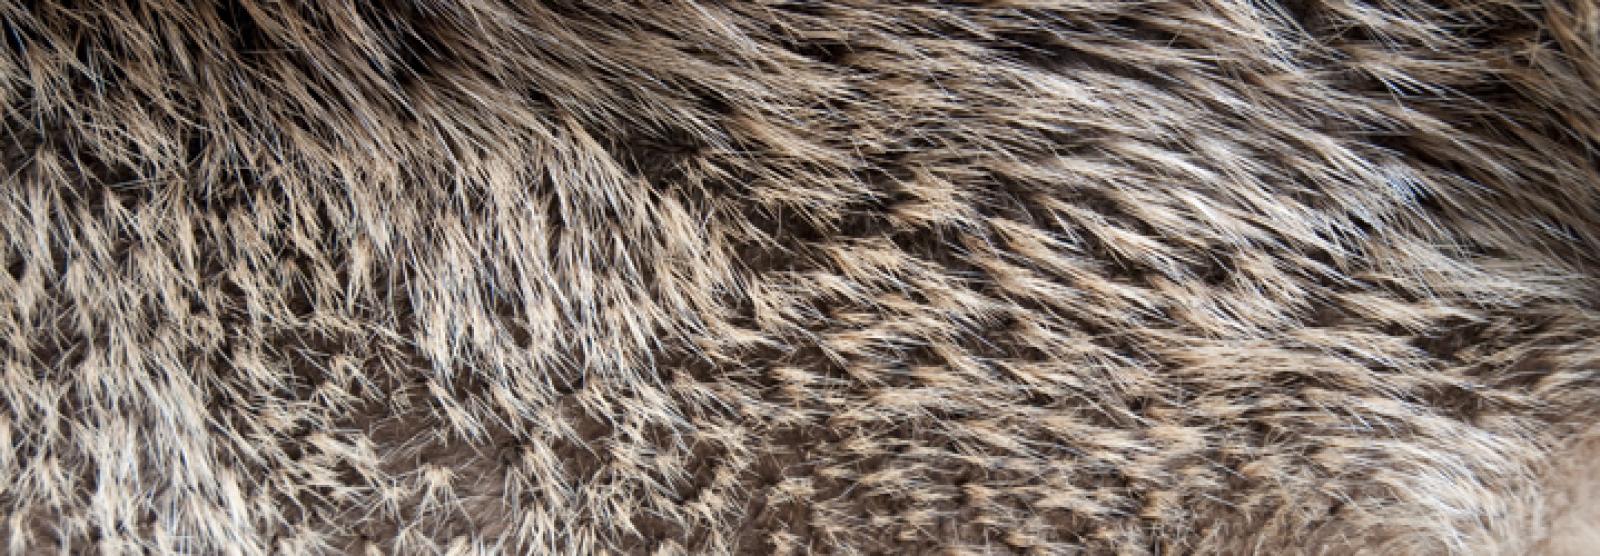 La fourrure de castor est l'une des plus denses du règne animal